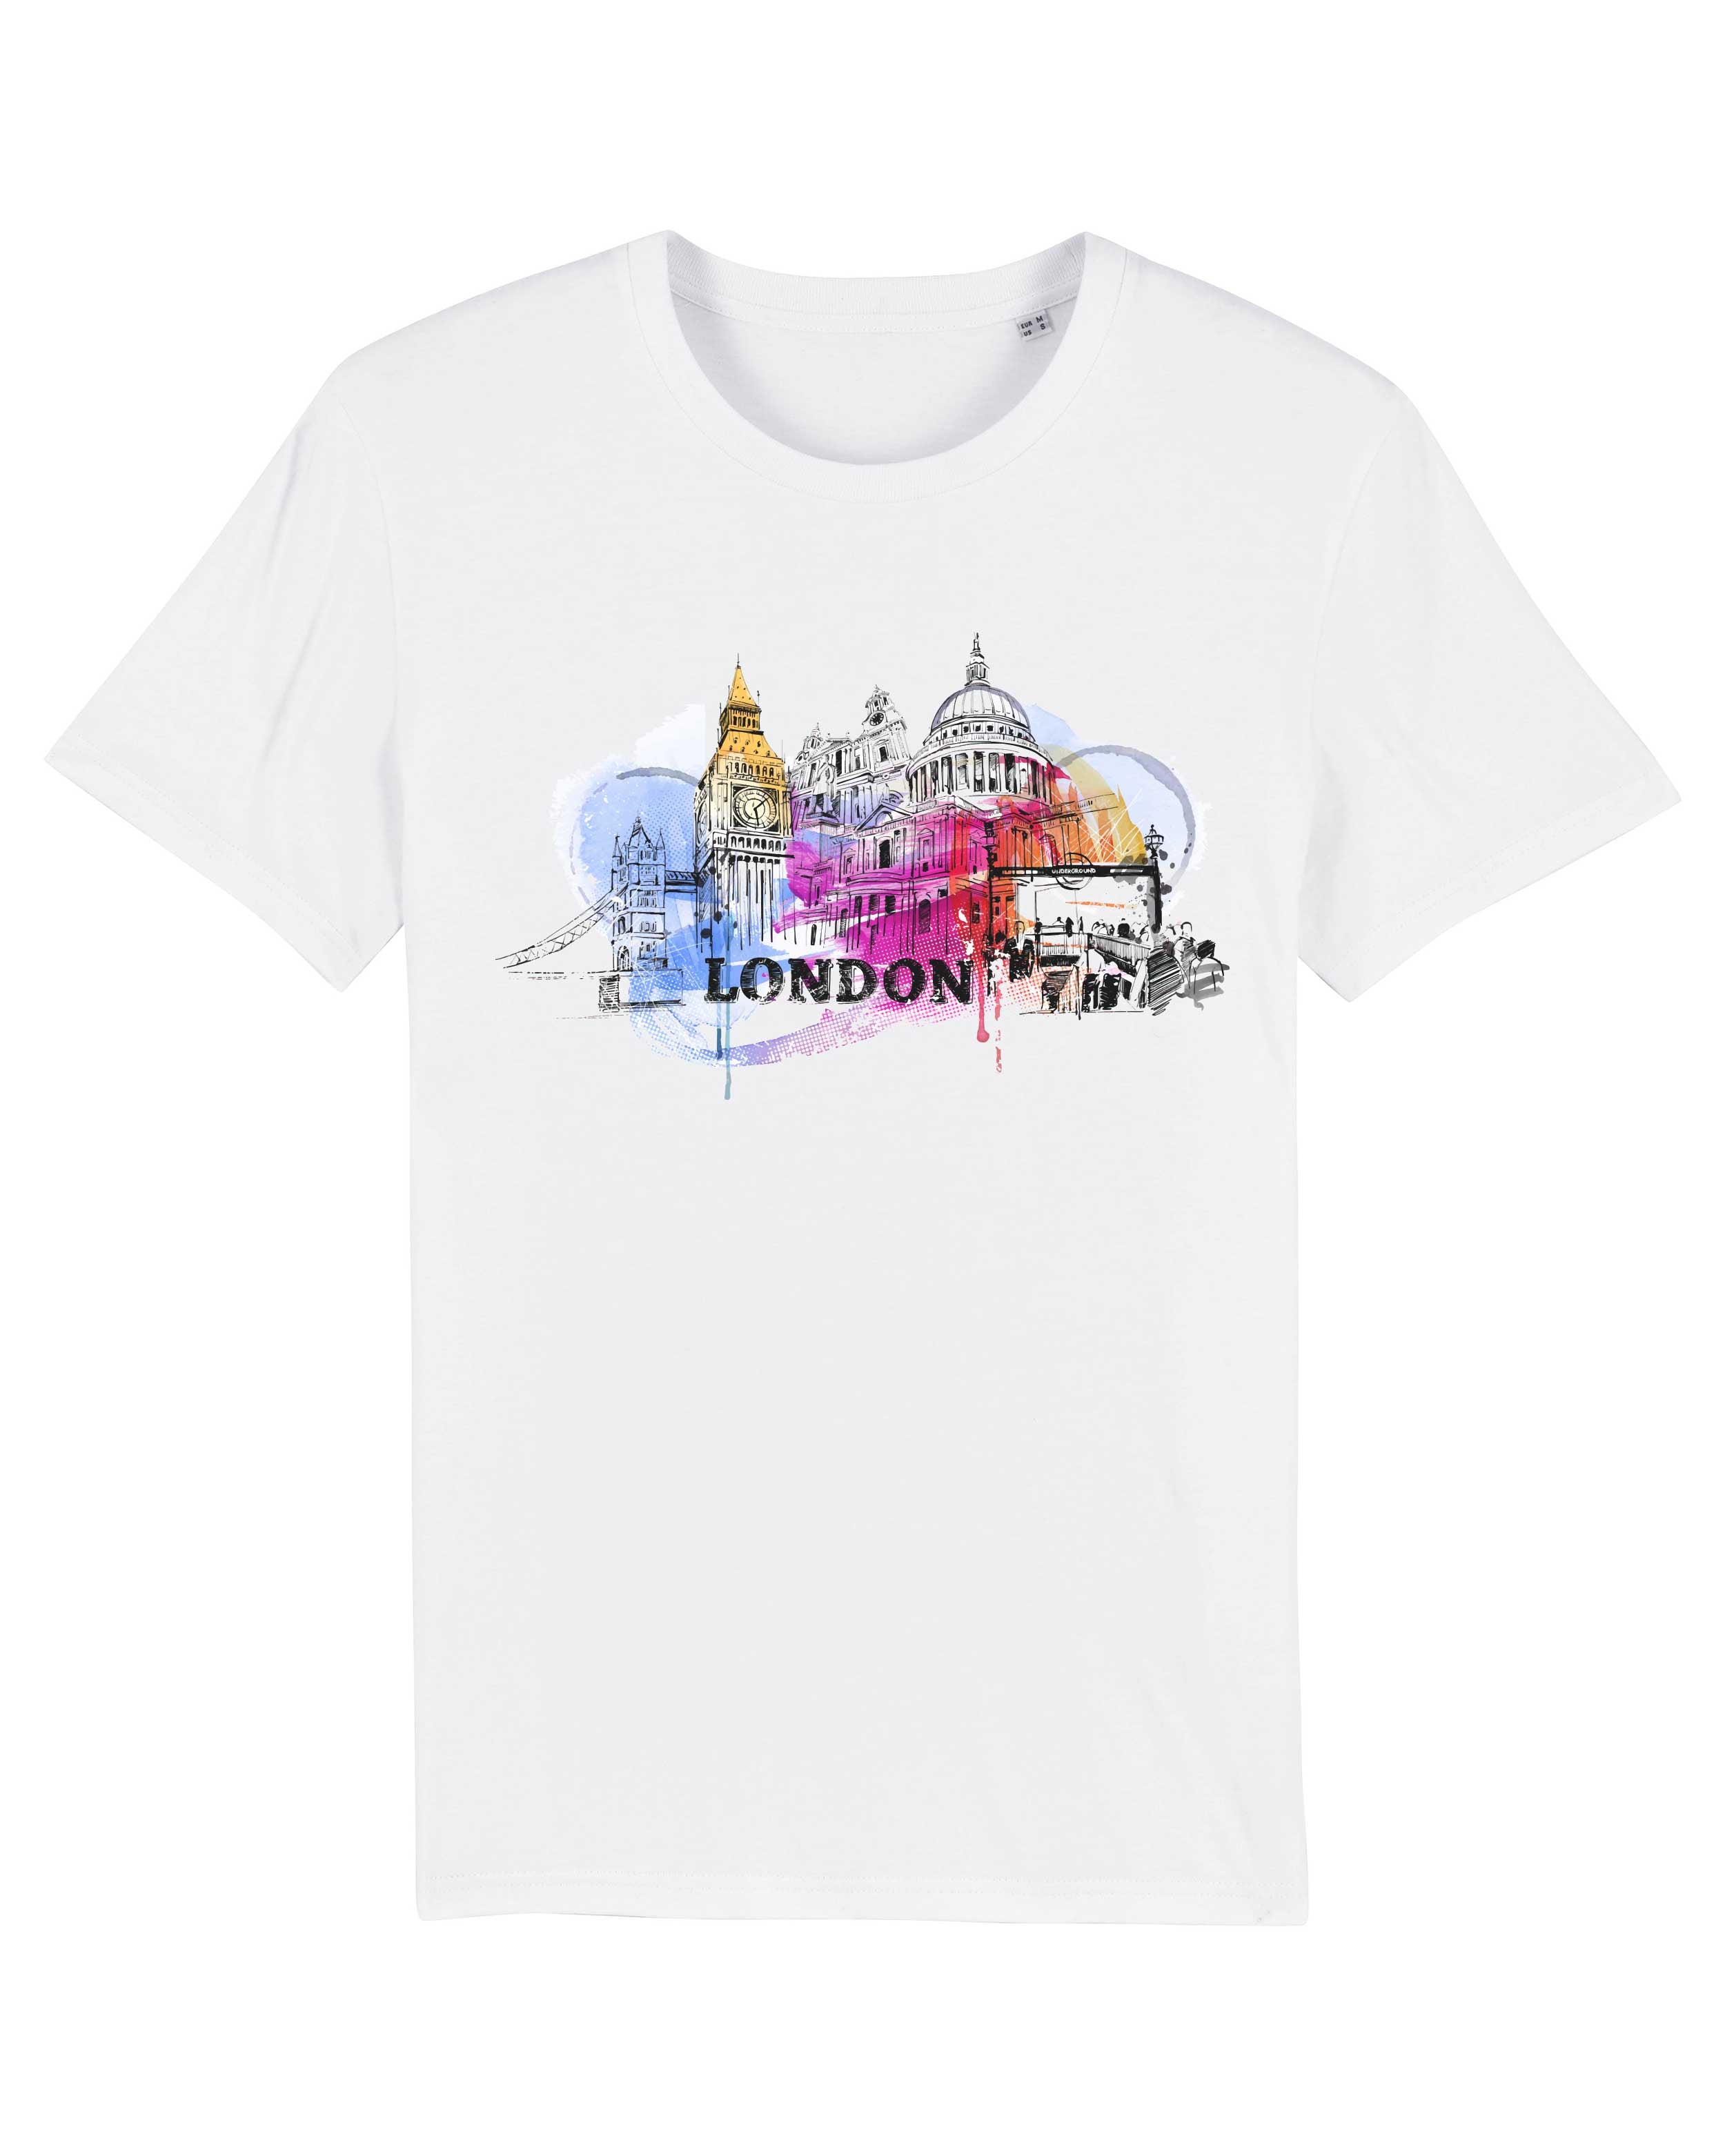 Kopie von T-Shirt London 5Illustration Stadt, Bio-Baumwolle, Unisex, Damen, Kids